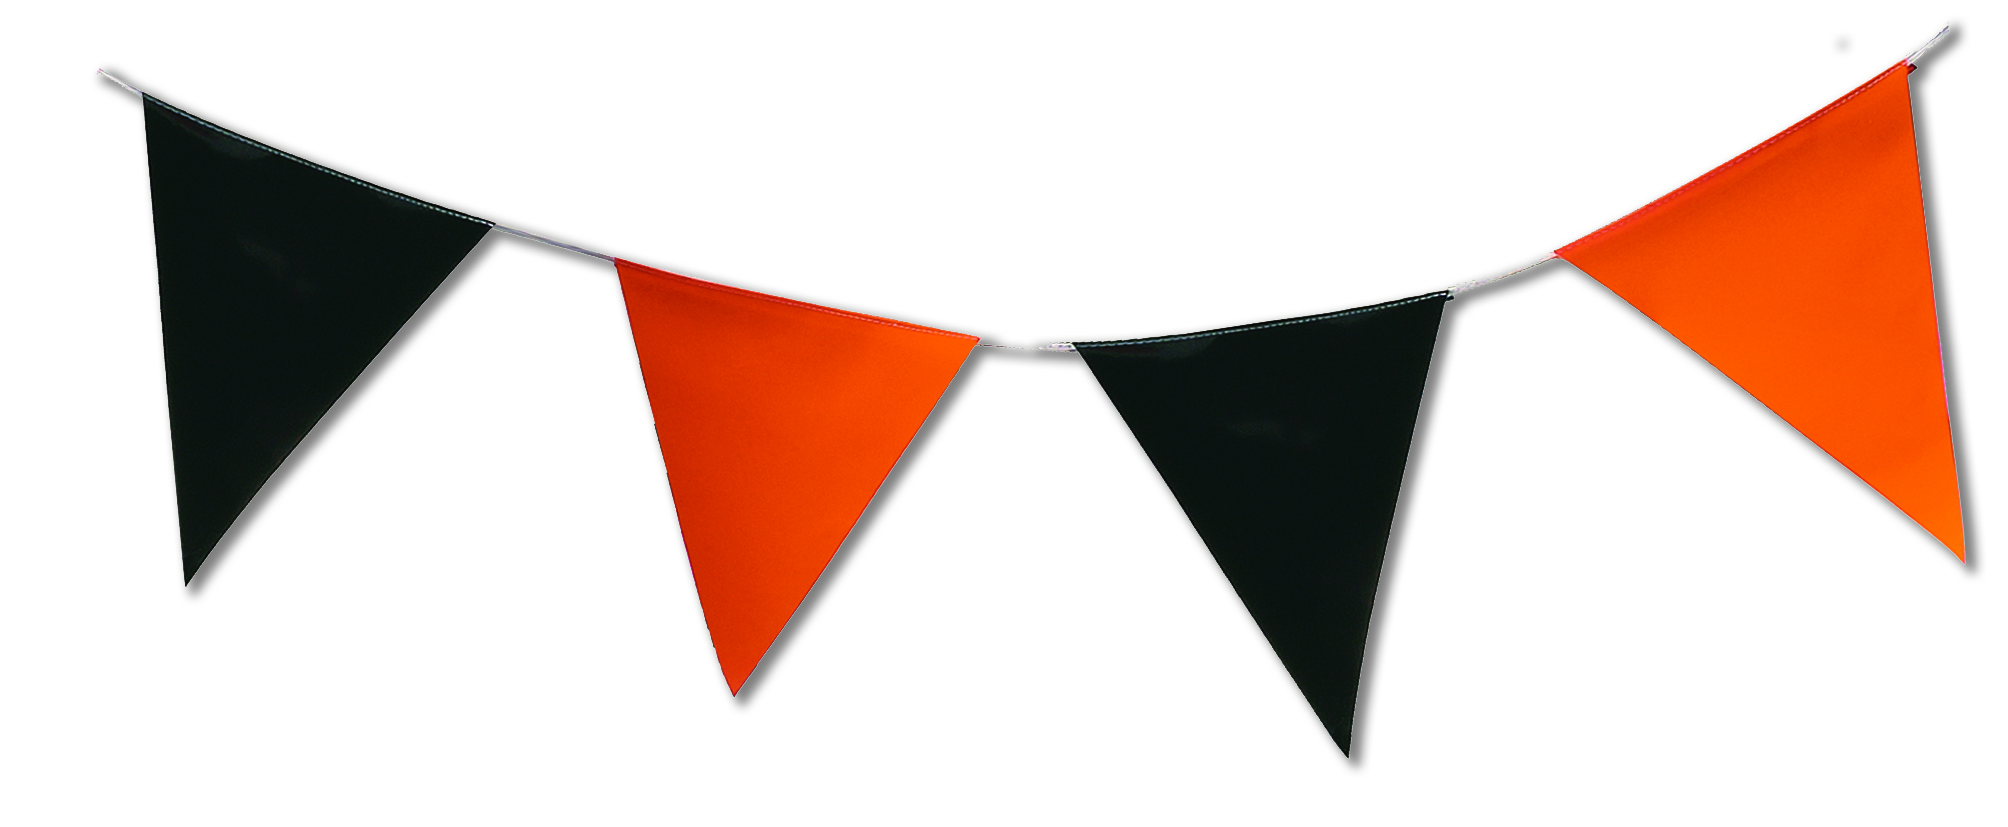 Guirlande fanions orange et noir triangulaire en plastique